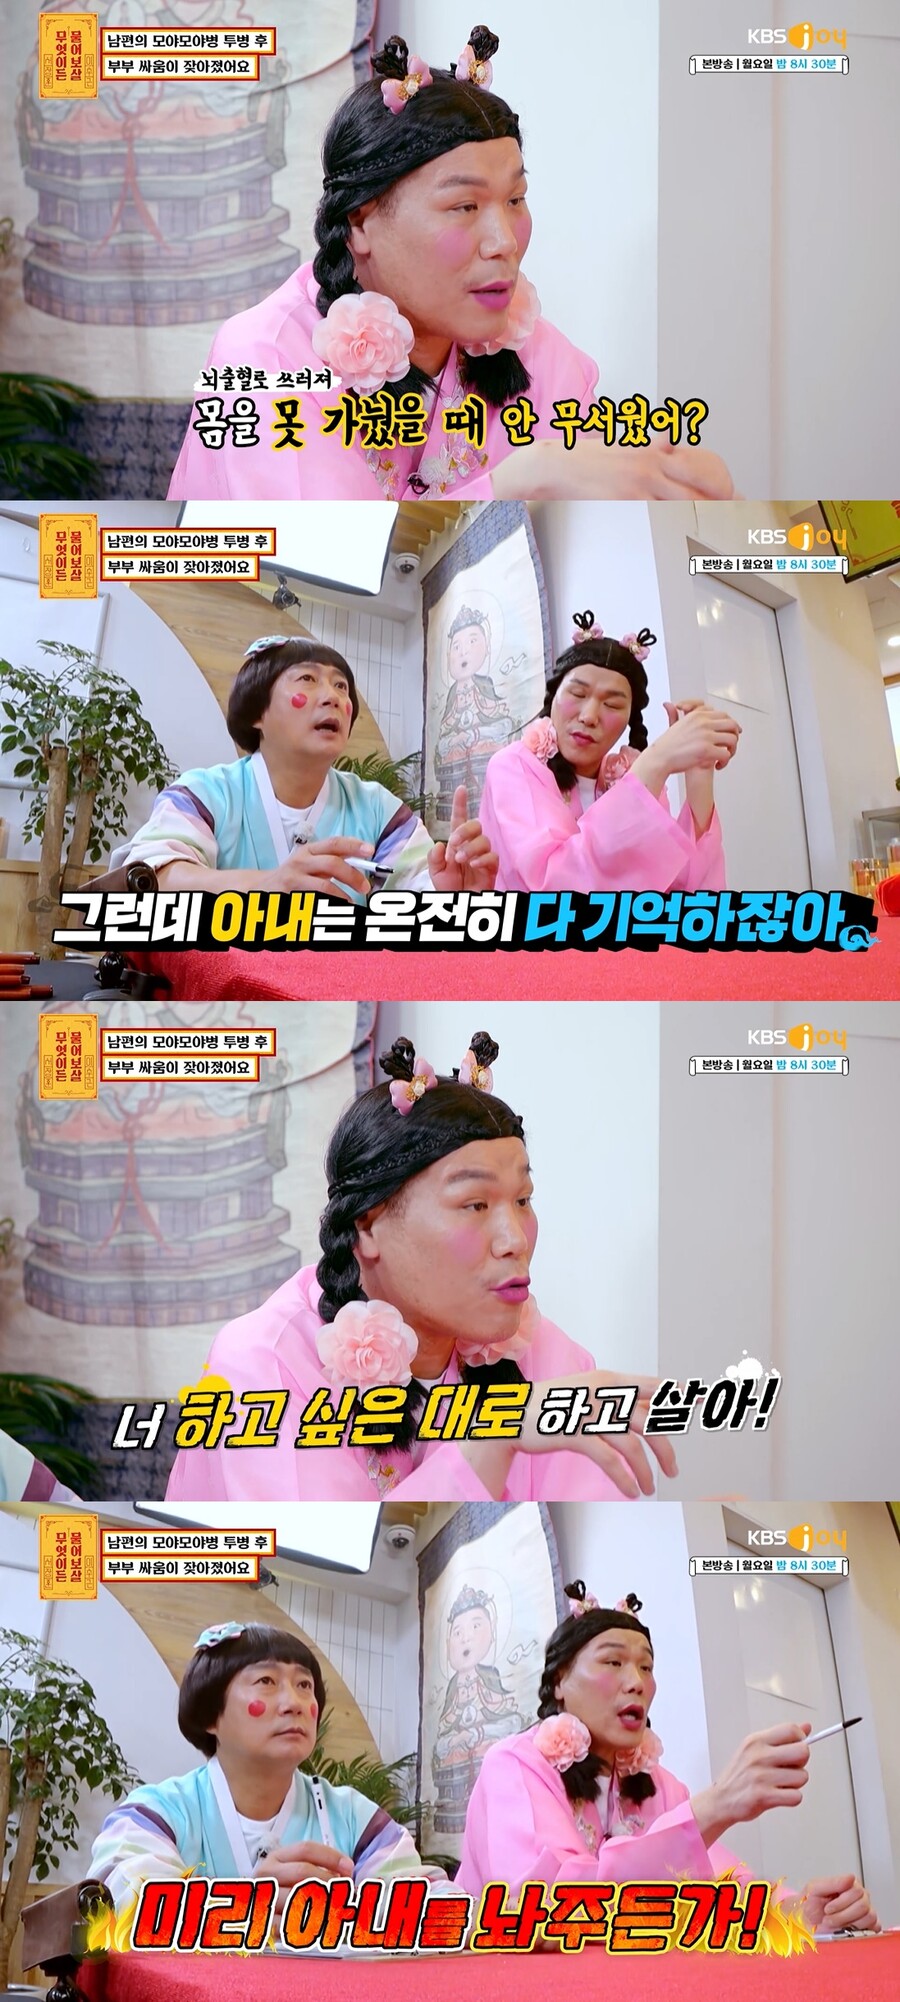 ▲ KBS 조이 예능프로그램 '무엇이든 물어보살' 방송화면. 출처| KBS조이